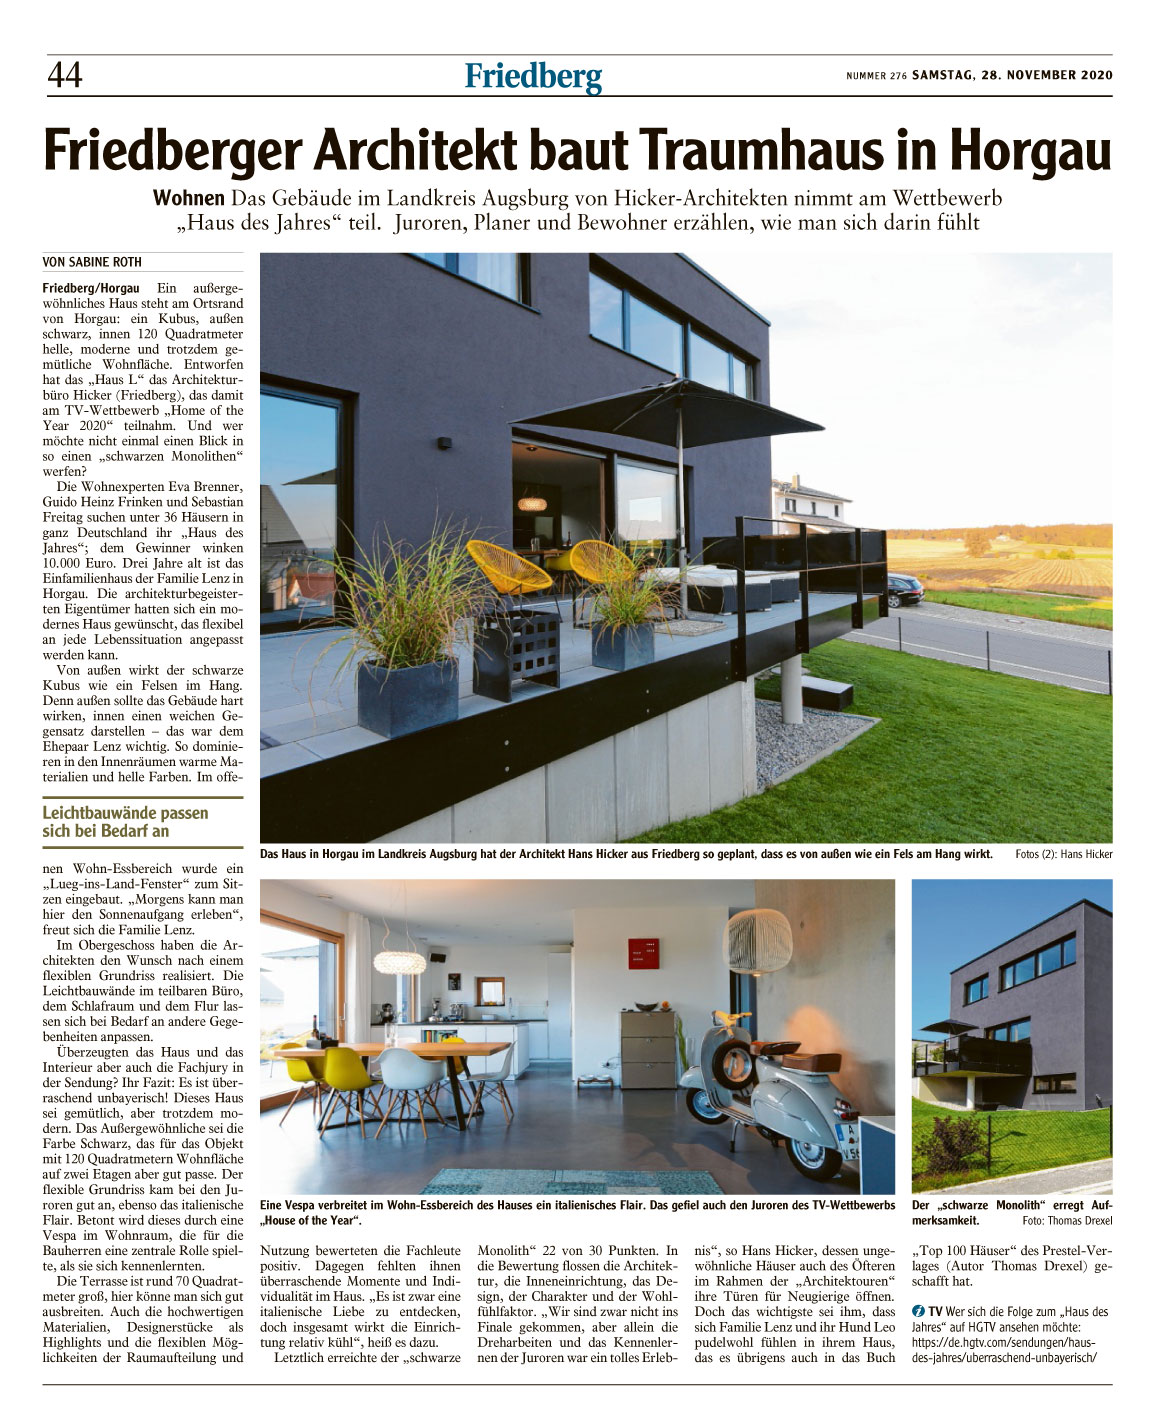 Hicker architekten - Artikel in der Friedberger Allgemeine vom 28.11.2020 zum Projekt  Haus L